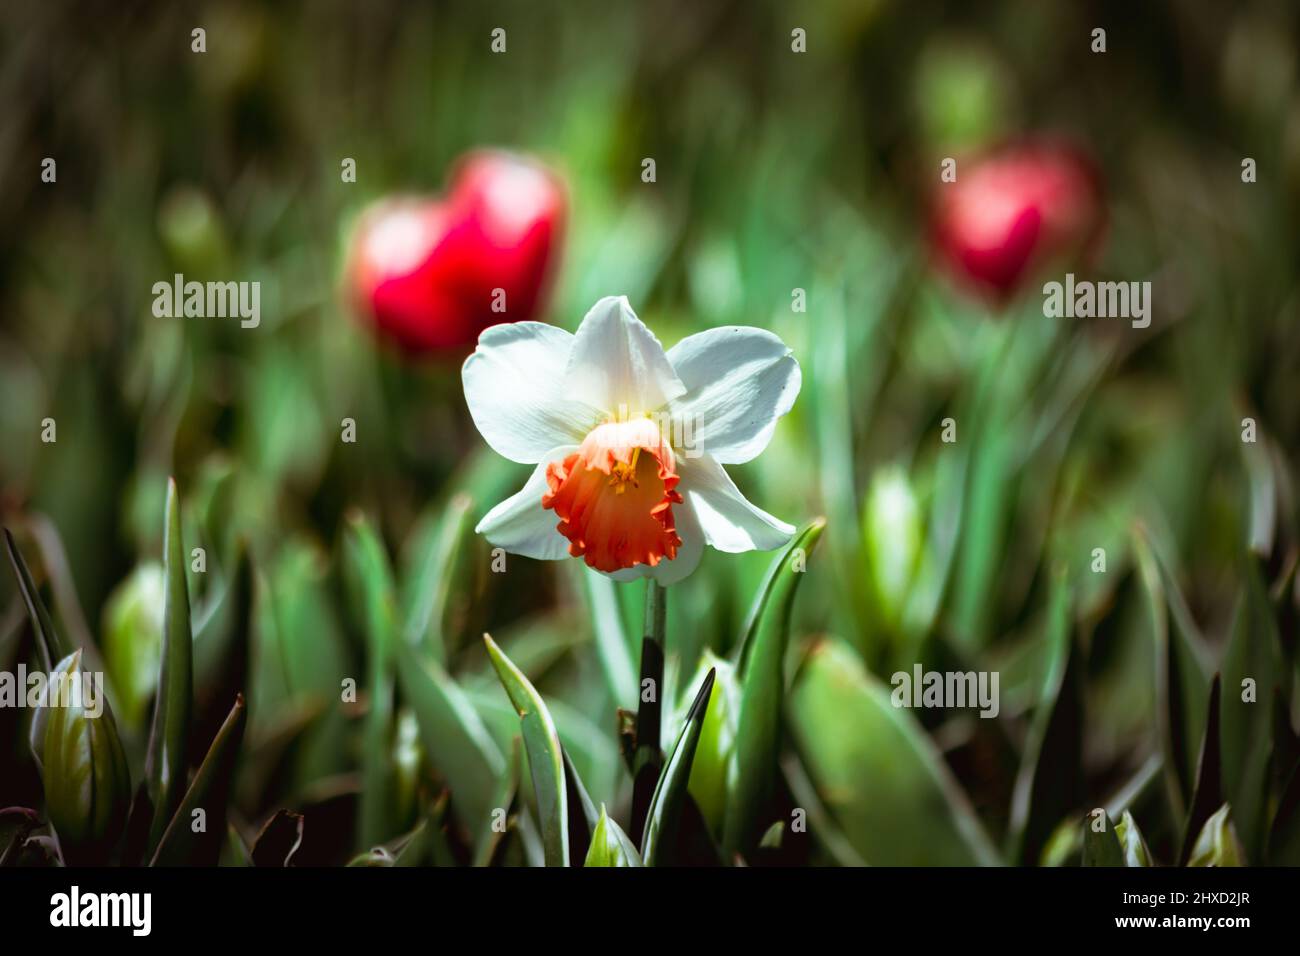 Daffodil. Vue rapprochée d'une jonquille dans le parc. Photo d'arrière-plan des fleurs du printemps. Mise au point sélective sur le centre. Banque D'Images